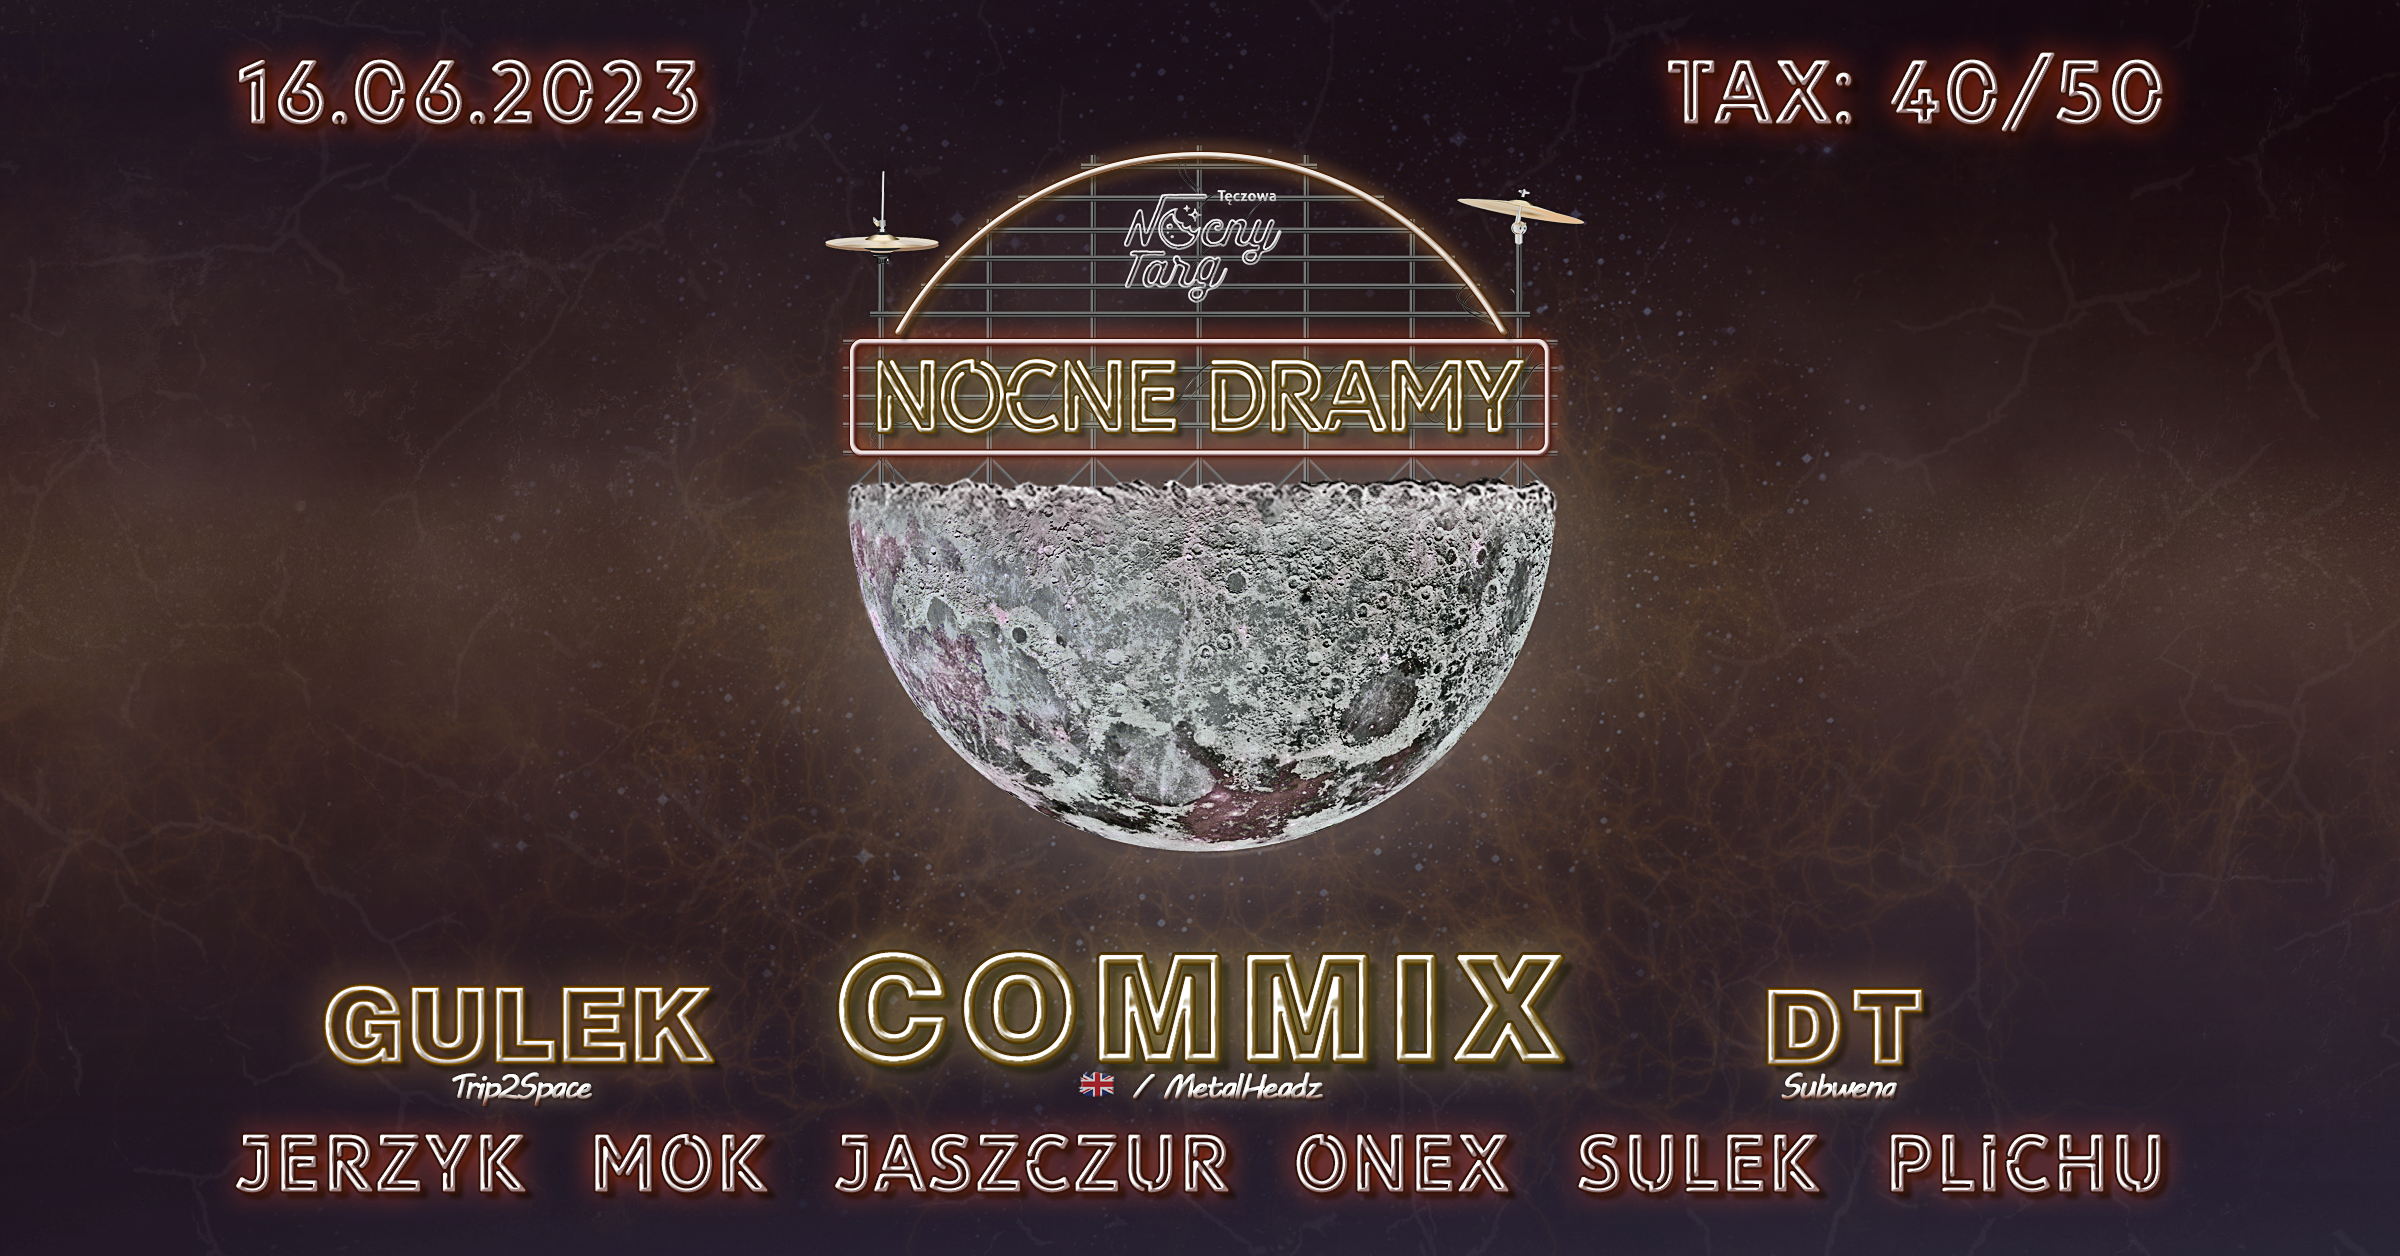 Nocne Dramy #15 -  Commix - Página frontal